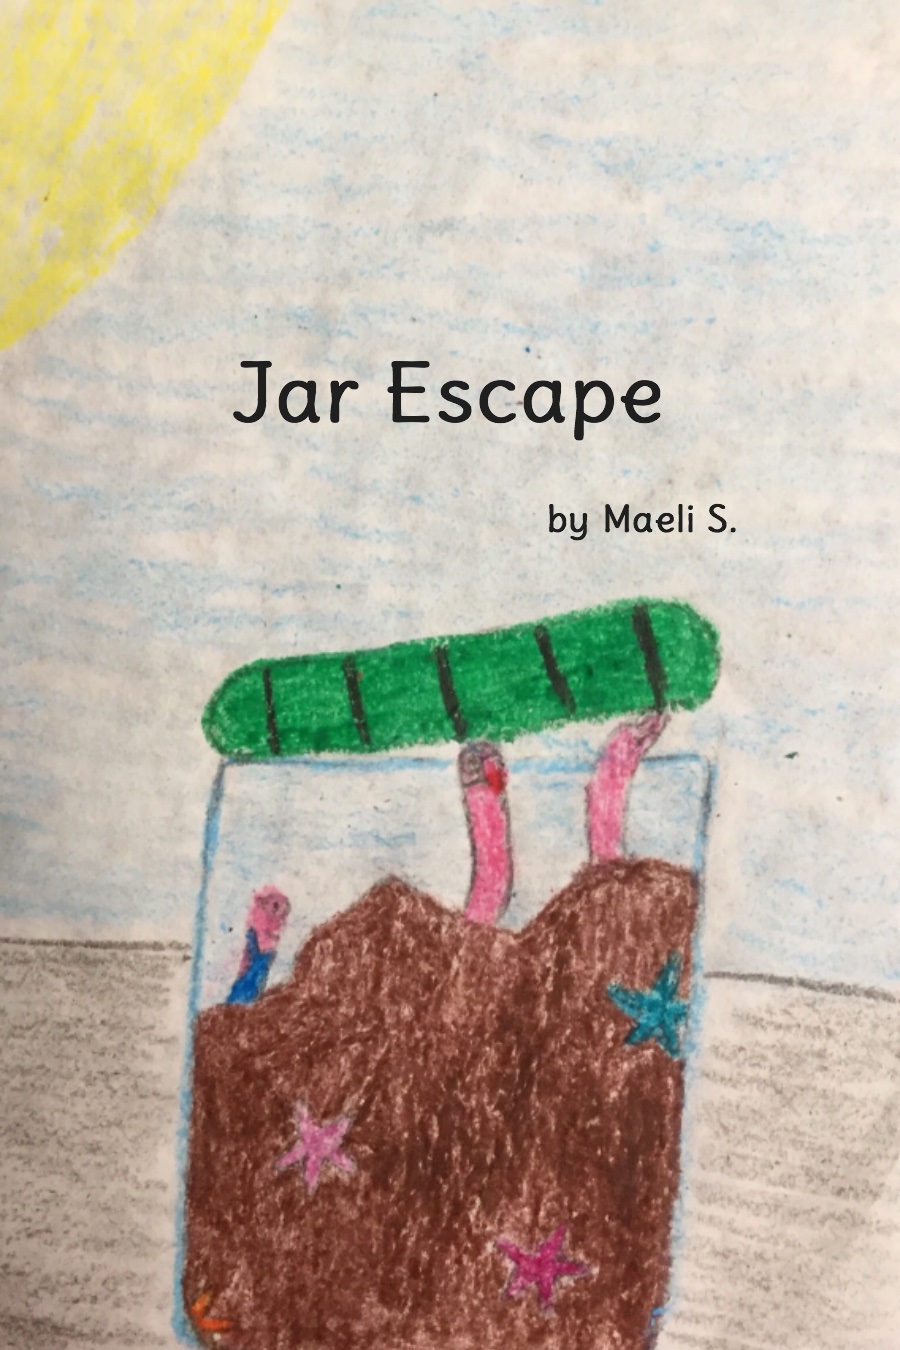 Jar Escape by Maeli S